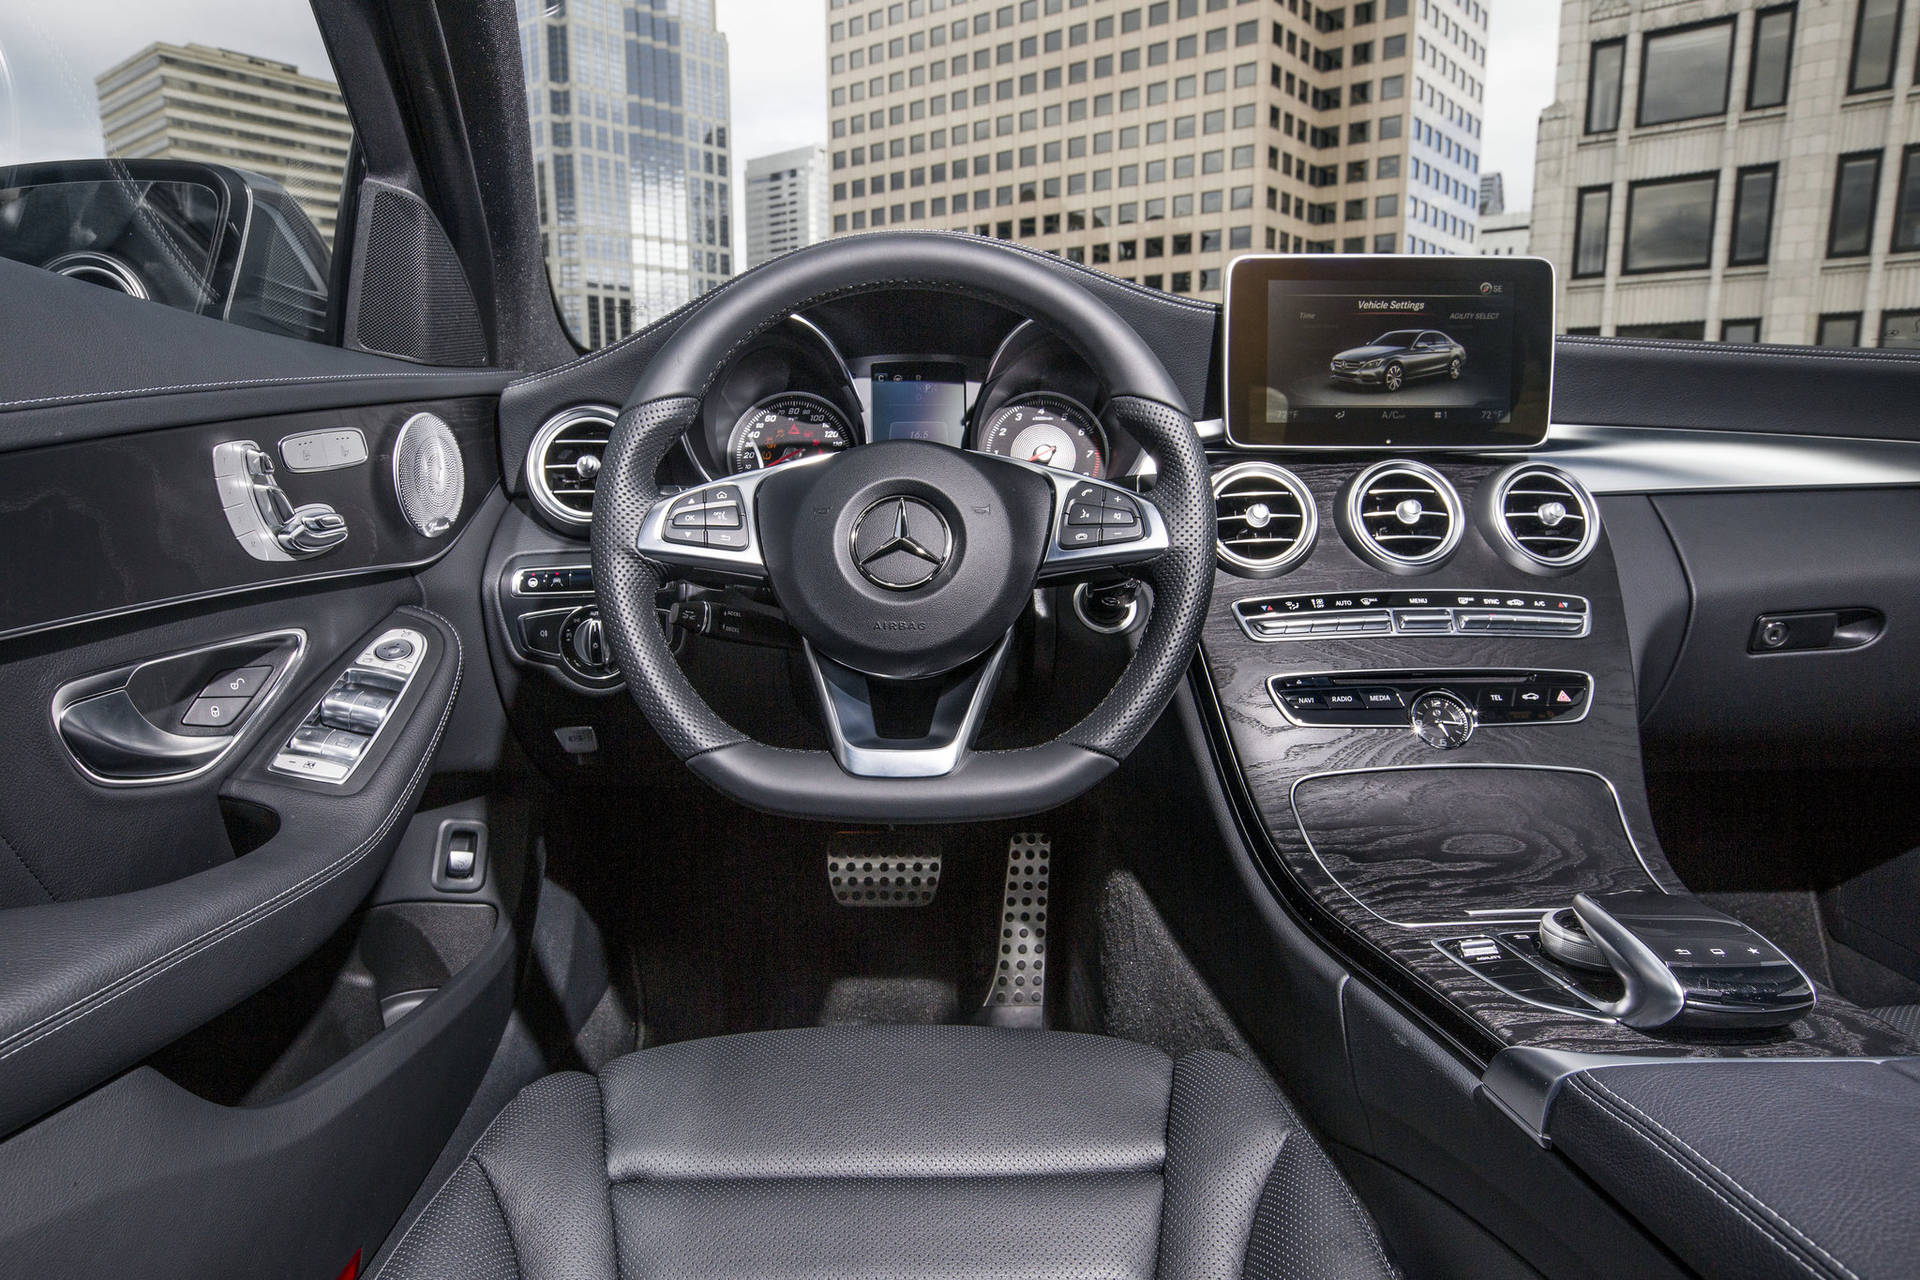 Mercedes Benz C300 Cool Interior